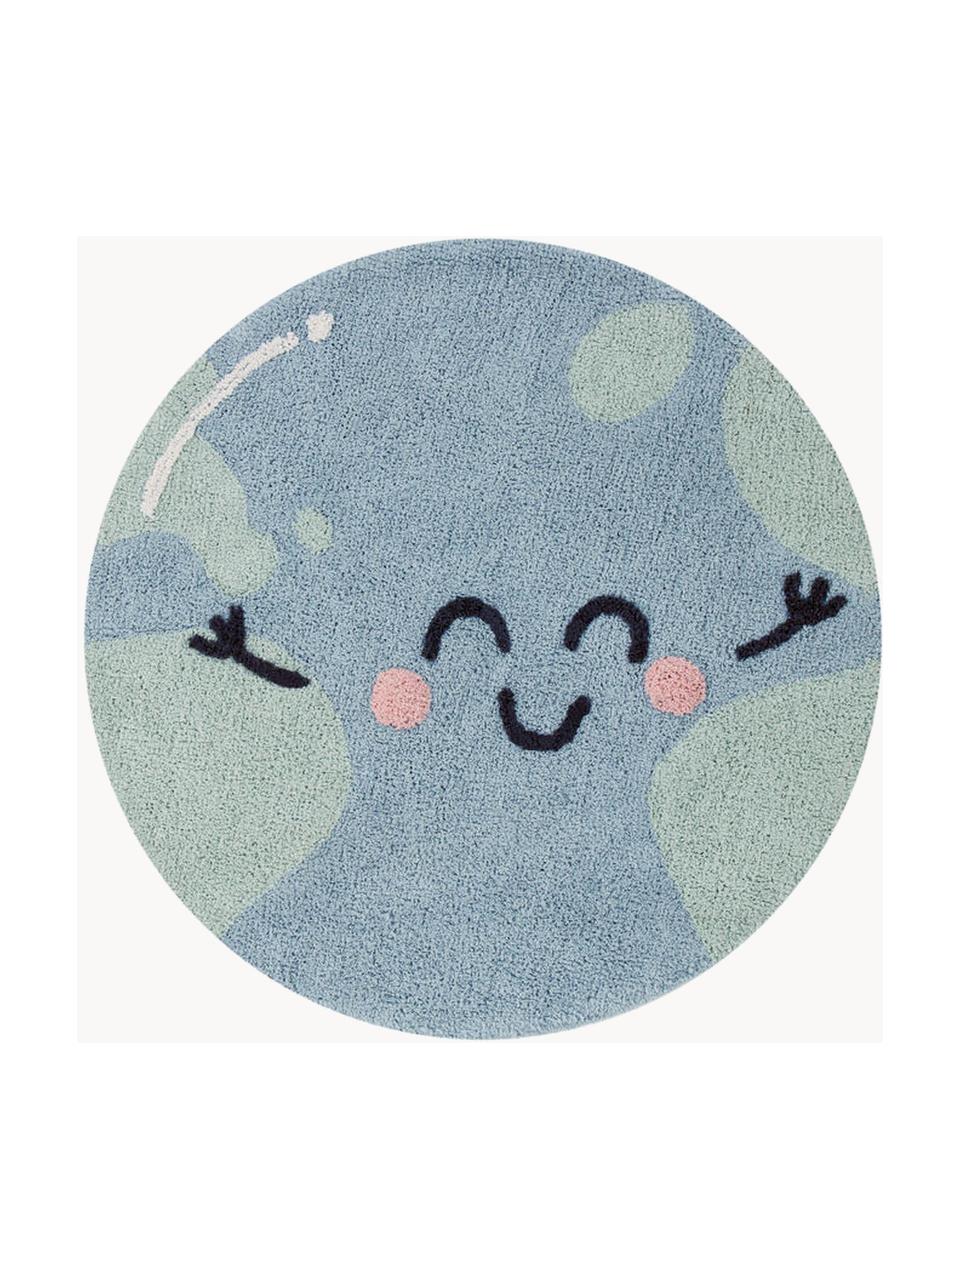 Tappeto per bambini tessuto a mano Big Big World, lavabile, Retro: 100% poliestere, Blu grigio, verde salvia, Ø 100 cm (taglia S)